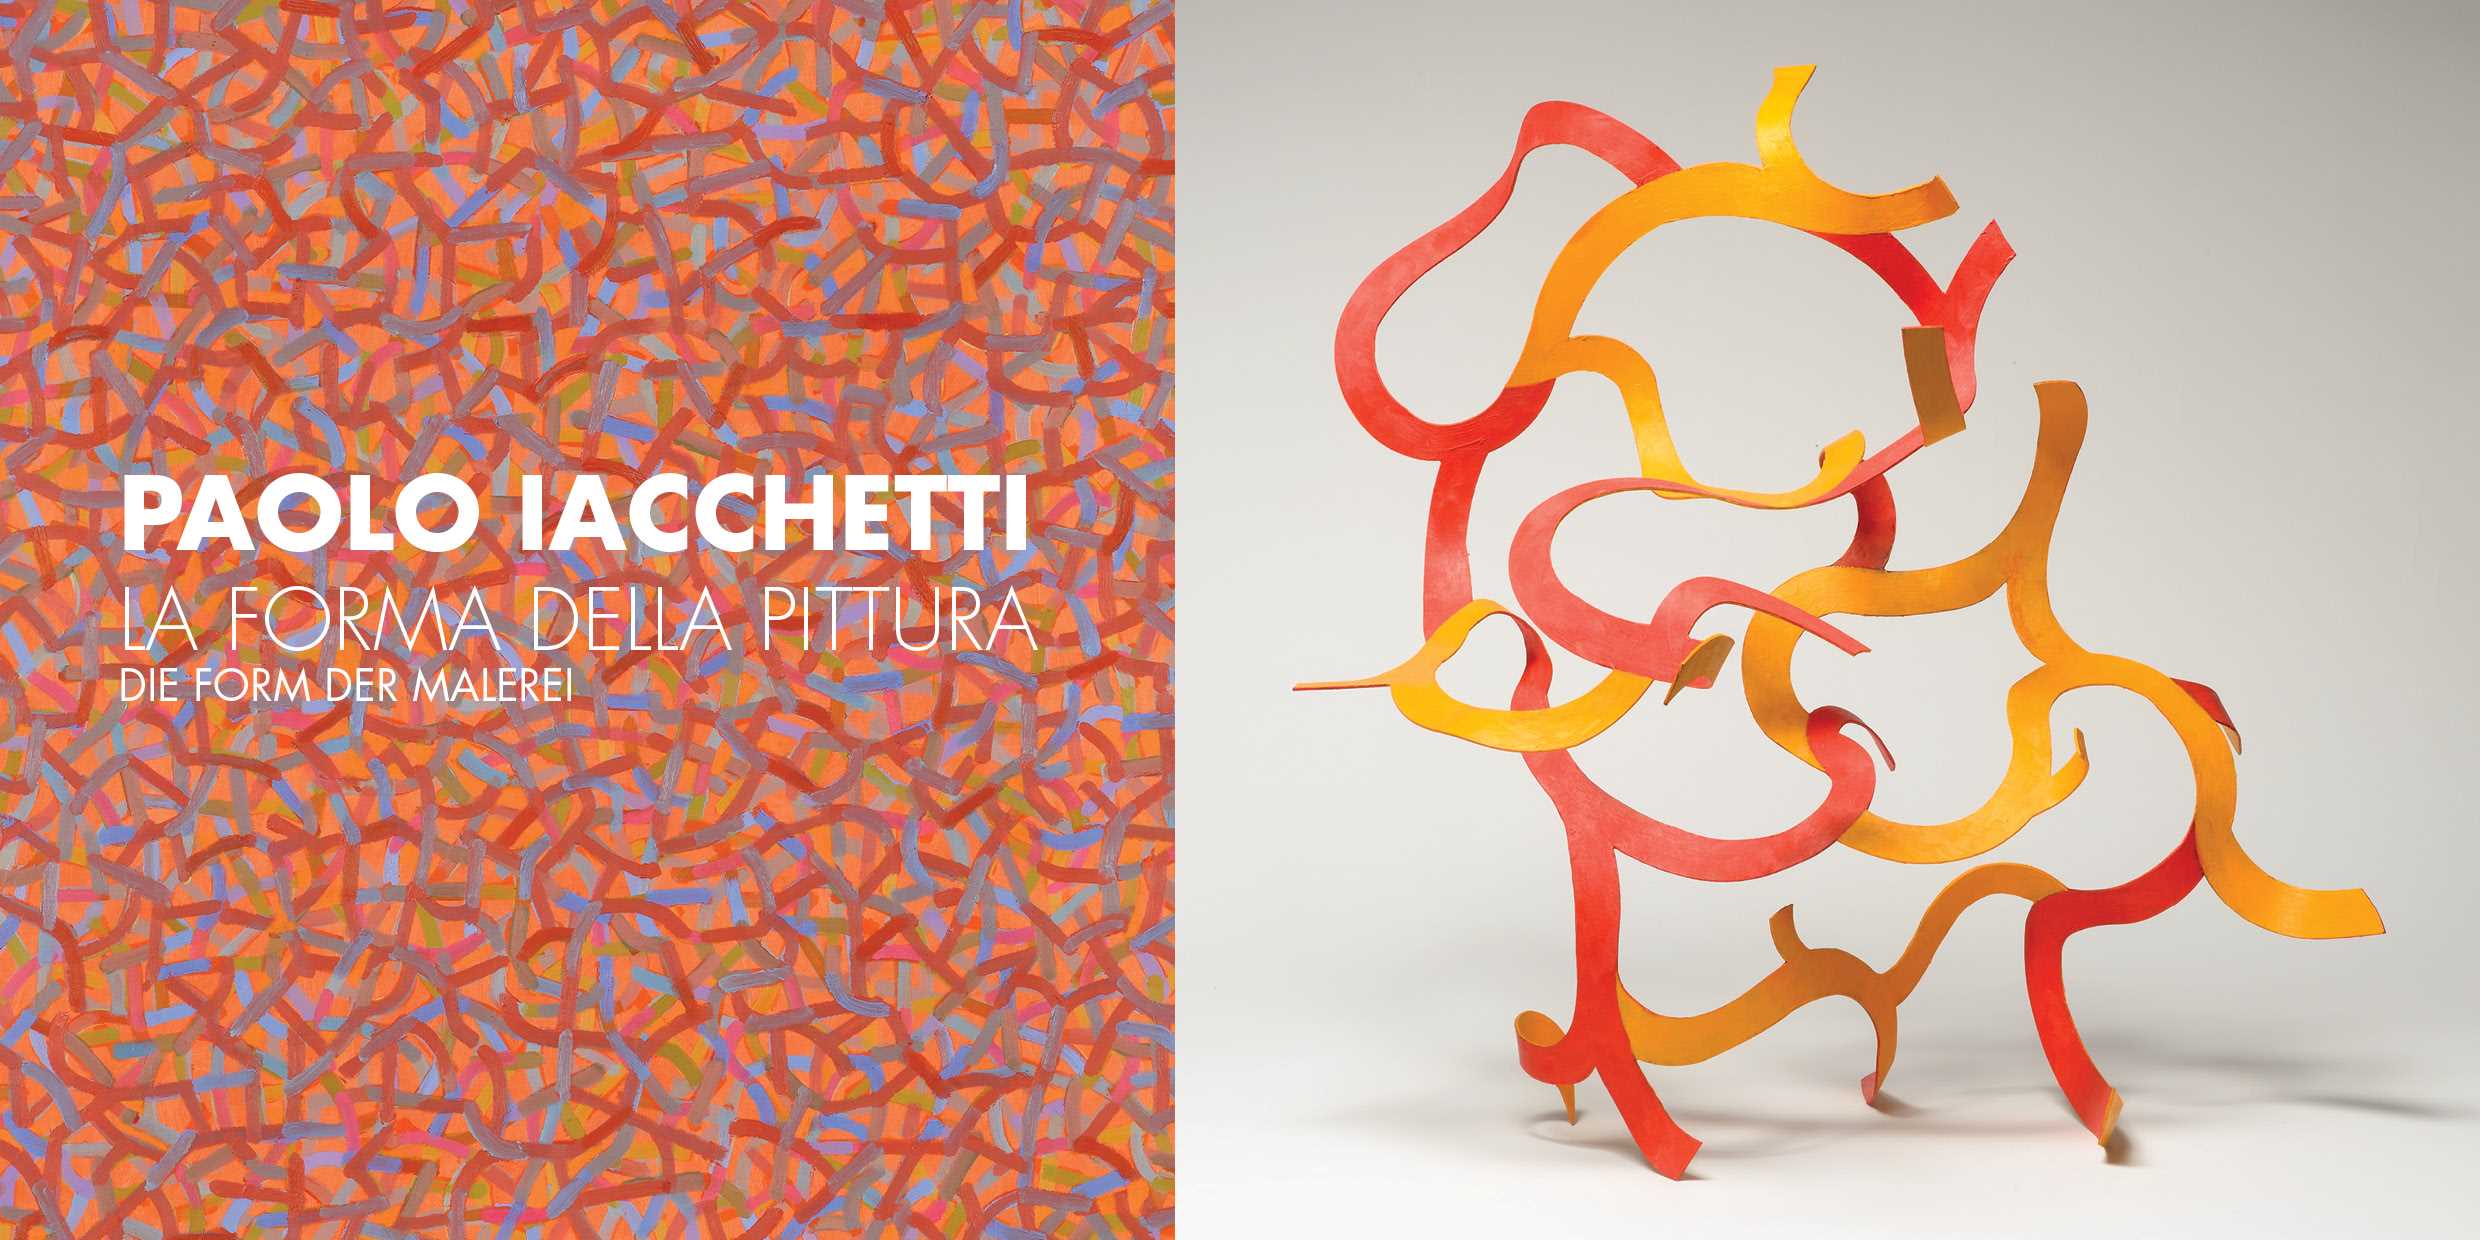 Paolo Iacchetti - La forma della pittura